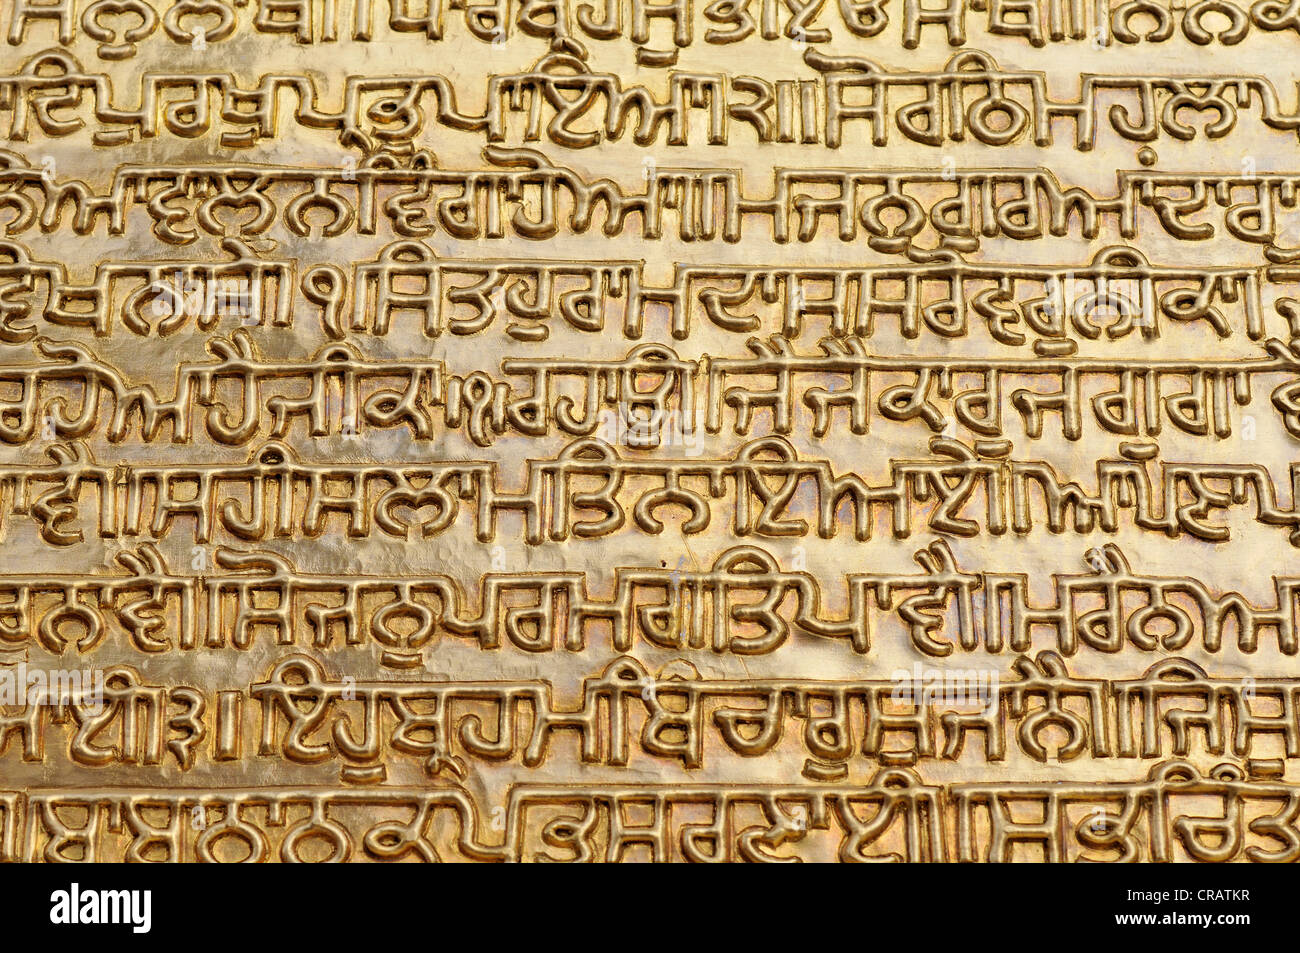 Texte doré du Granth Sahib, le livre saint des sikhs, Harmandir Sahib ou Golden Temple, Amritsar, Punjab, Inde du Nord, Inde Banque D'Images